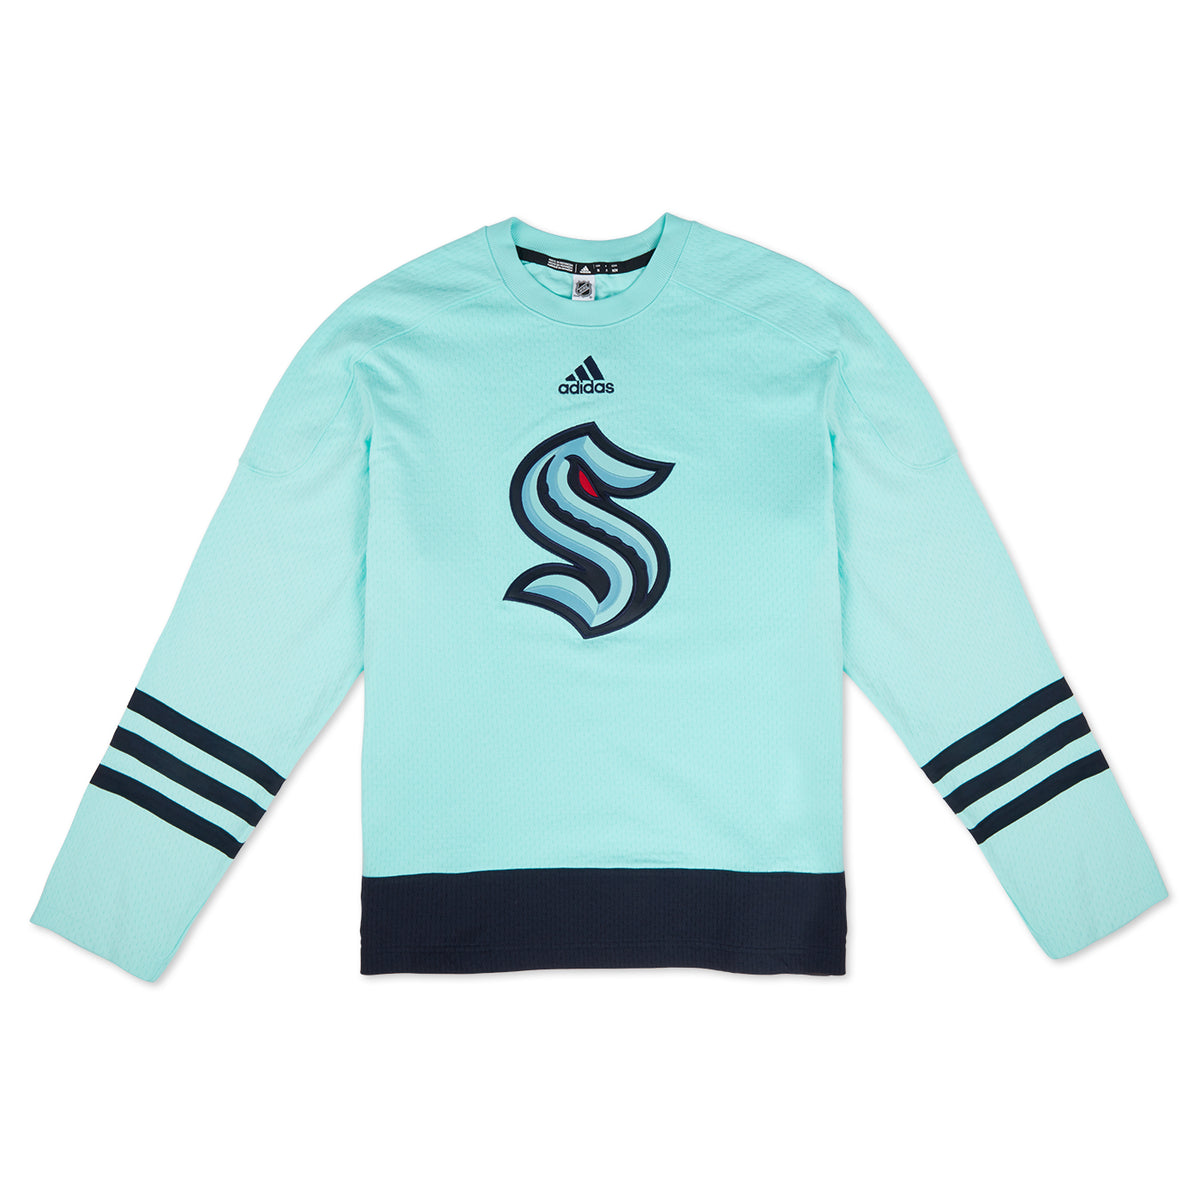 Seattle Kraken Hockey NHL Shirt, hoodie, sweater, long sleeve and